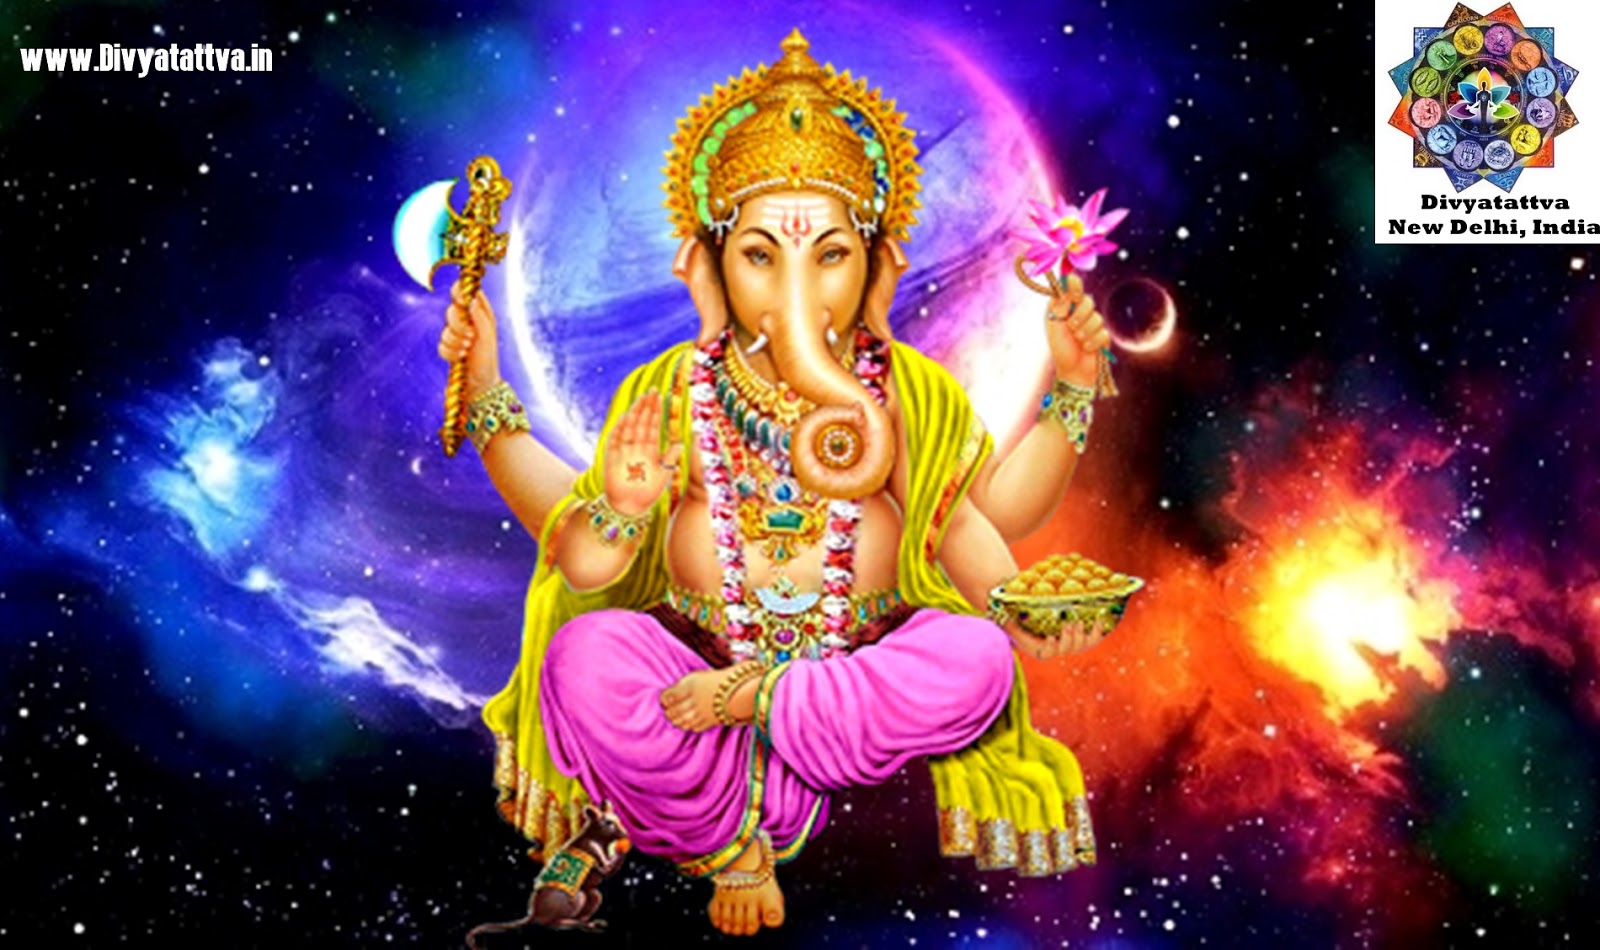 Ganesh Hd Wallpapers For Mobile, Lord Ganesha Hd Wallpapers, - Ganesh God Images Hd 1080p - HD Wallpaper 